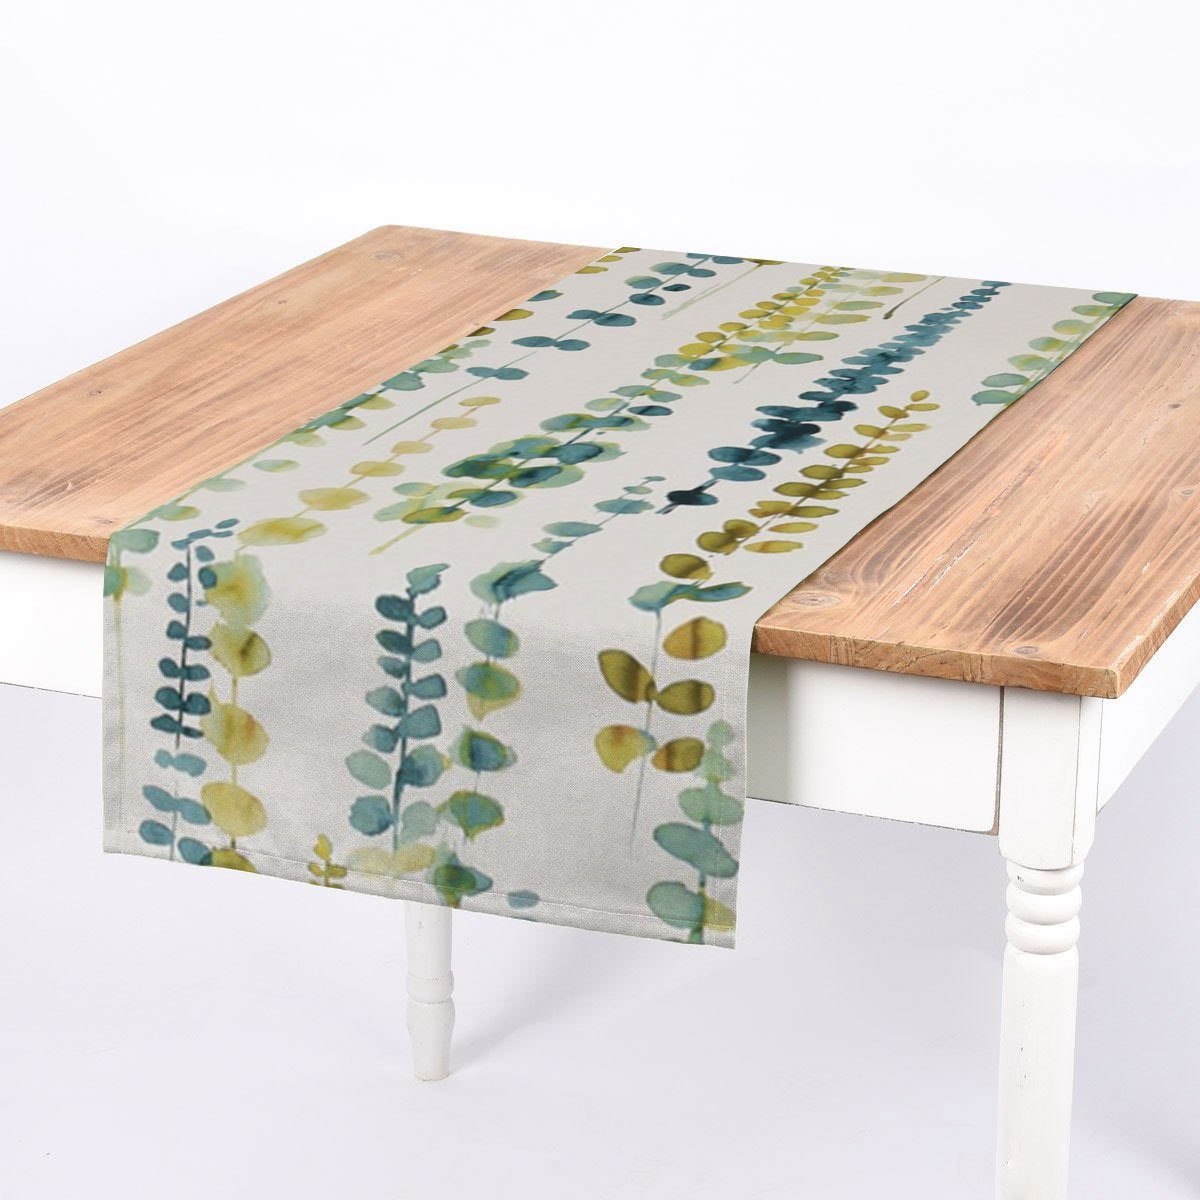 SCHÖNER LEBEN. Tischläufer SCHÖNER LEBEN. Tischläufer Ranken Blätter  Aquarell weiß grün blau, handmade | Tischläufer